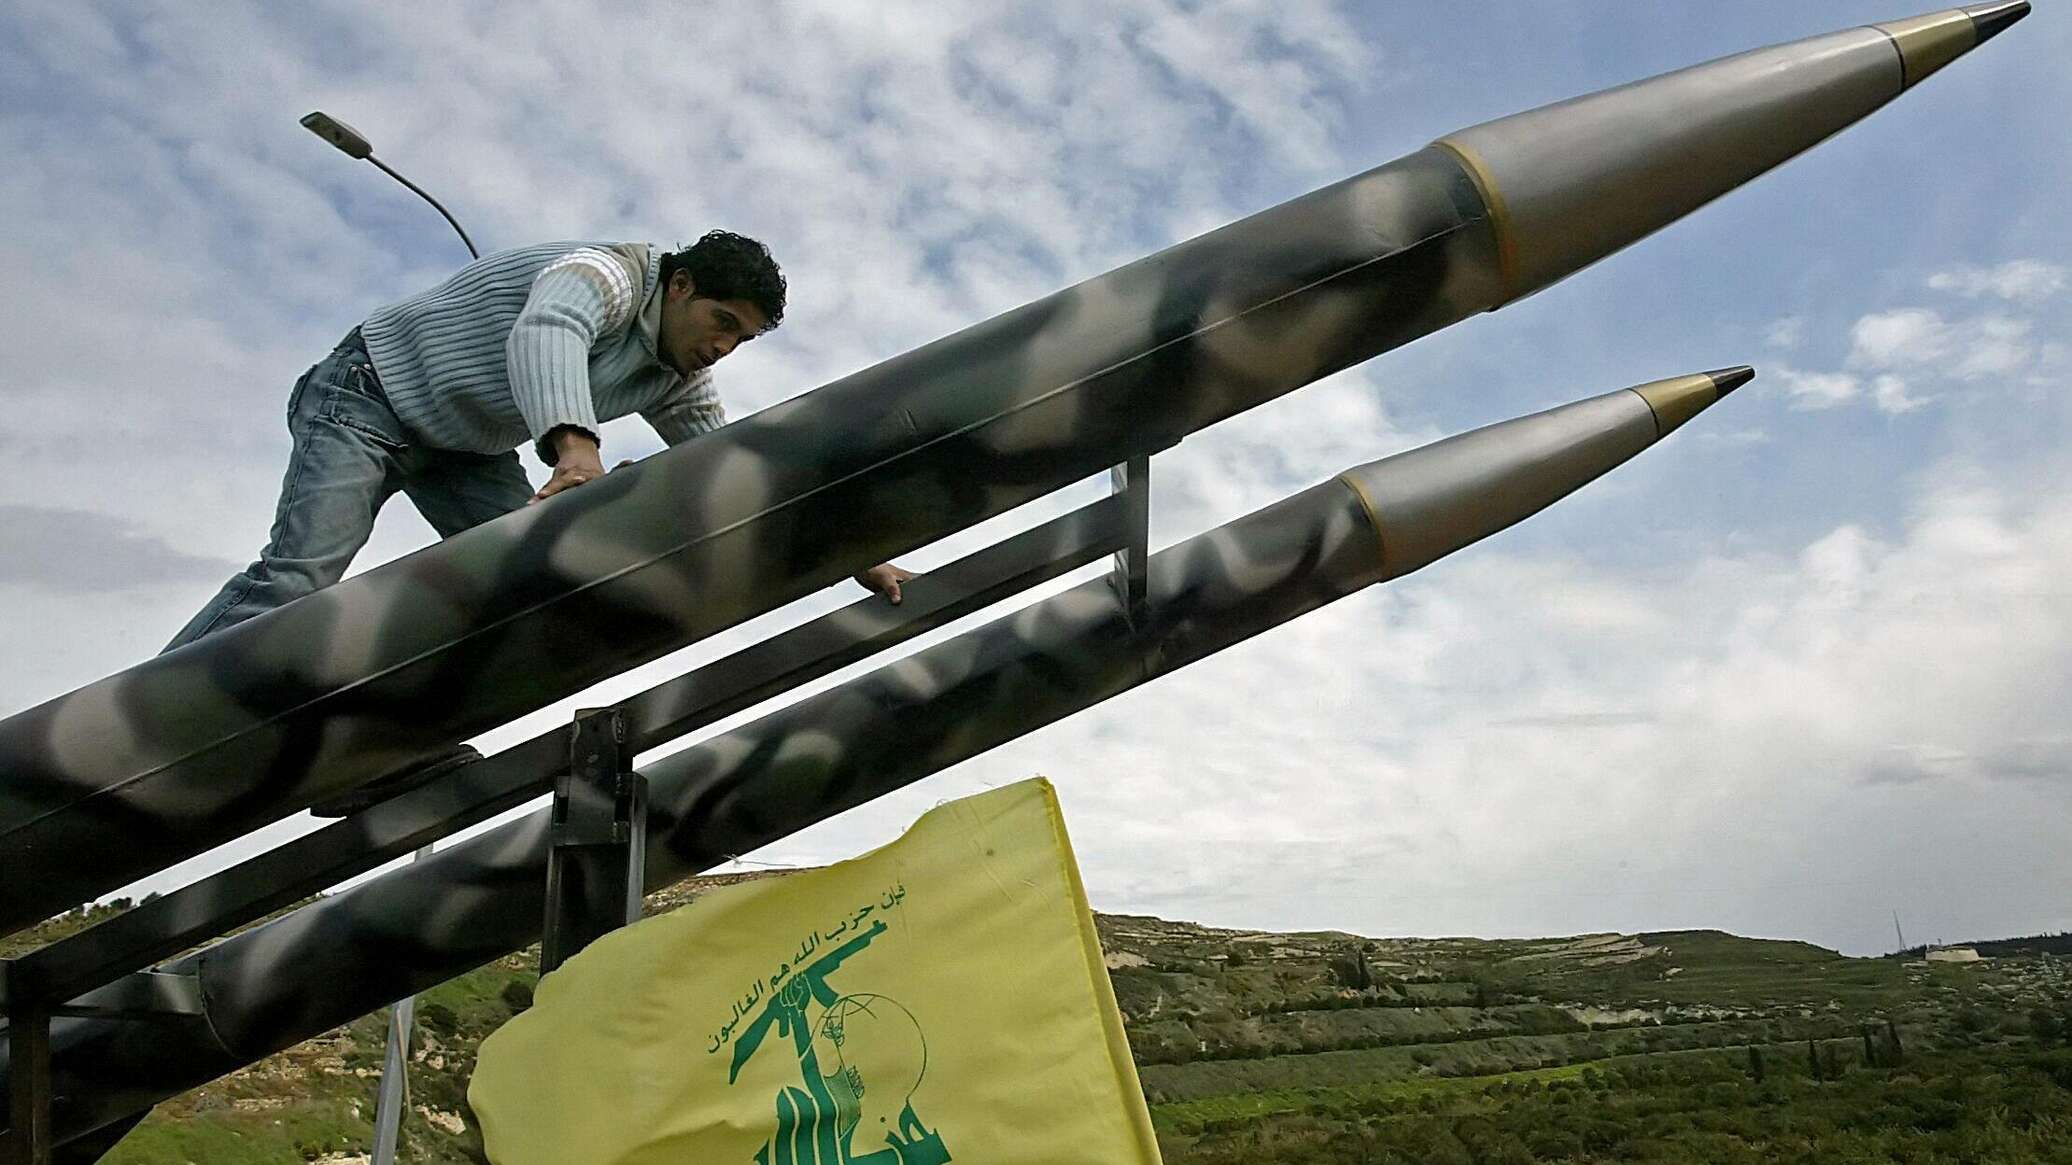 "حزب الله" اللبناني يعلن استهداف مقر الدفاع الجوي والصاروخي الإسرائيلي بالجولان